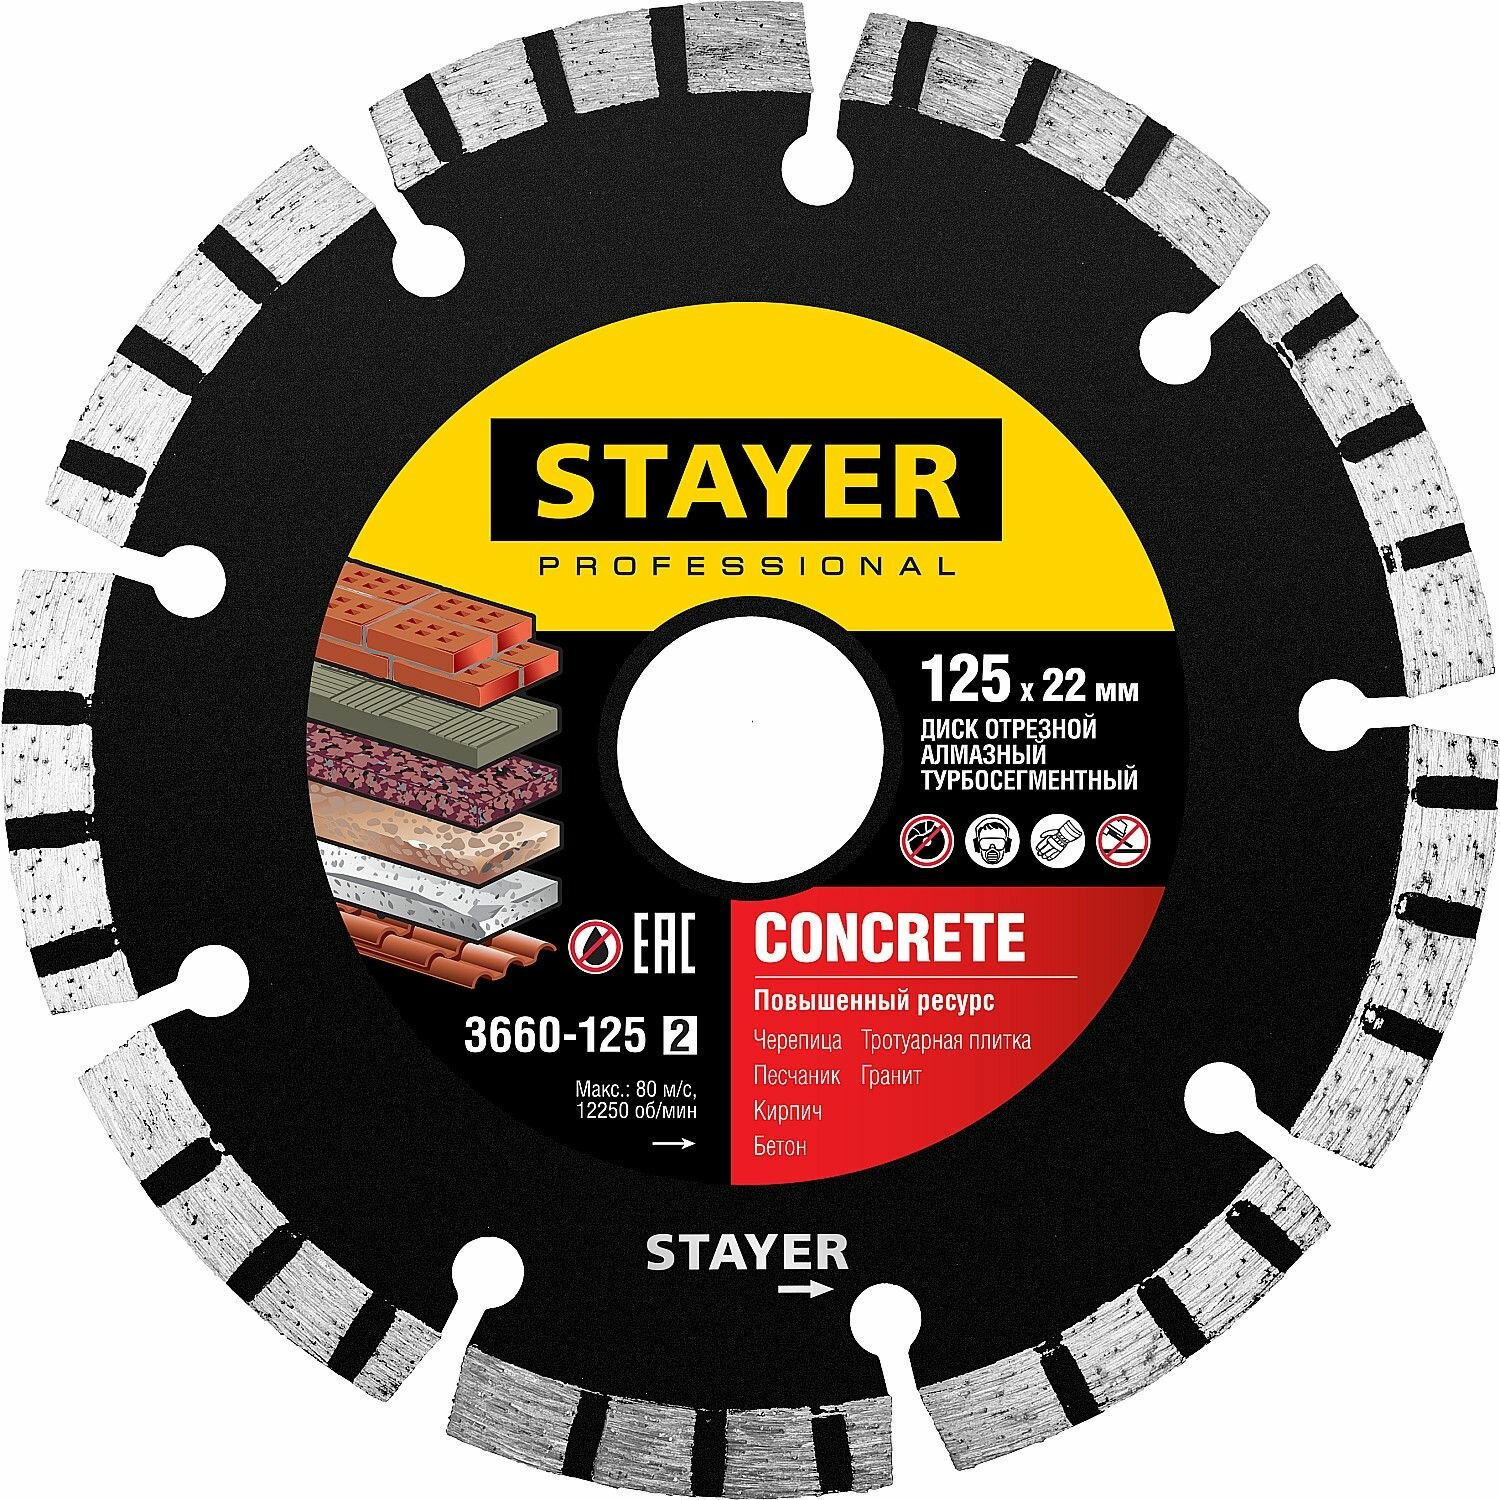 Stayer concrete, 125 мм, турбо-сегментный алмазный диск, professional